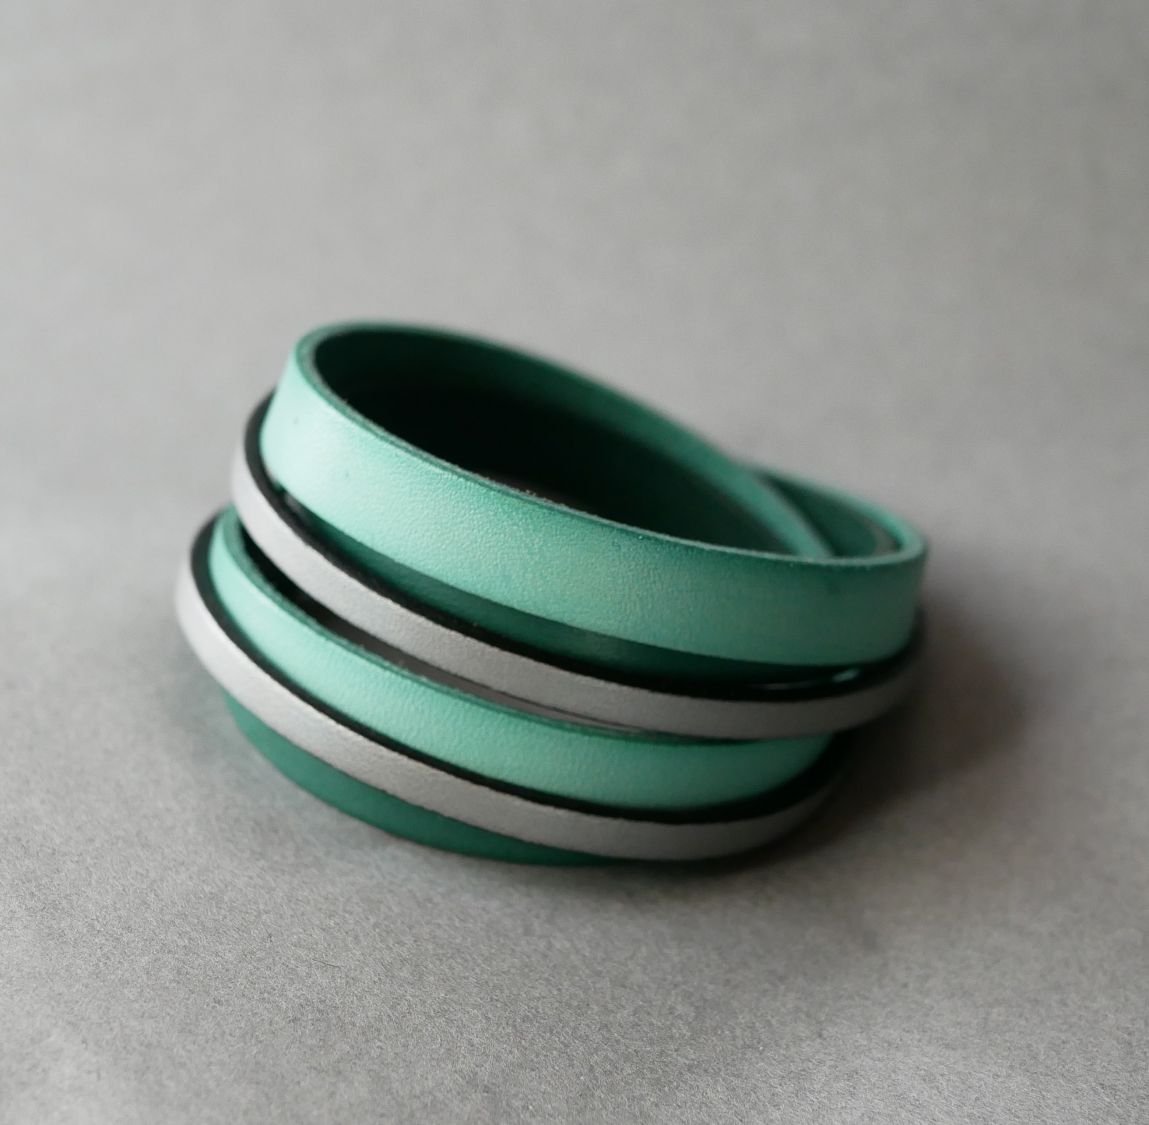 Manchette bracelet double tour en cuir Vert et Argenté personnalisé  